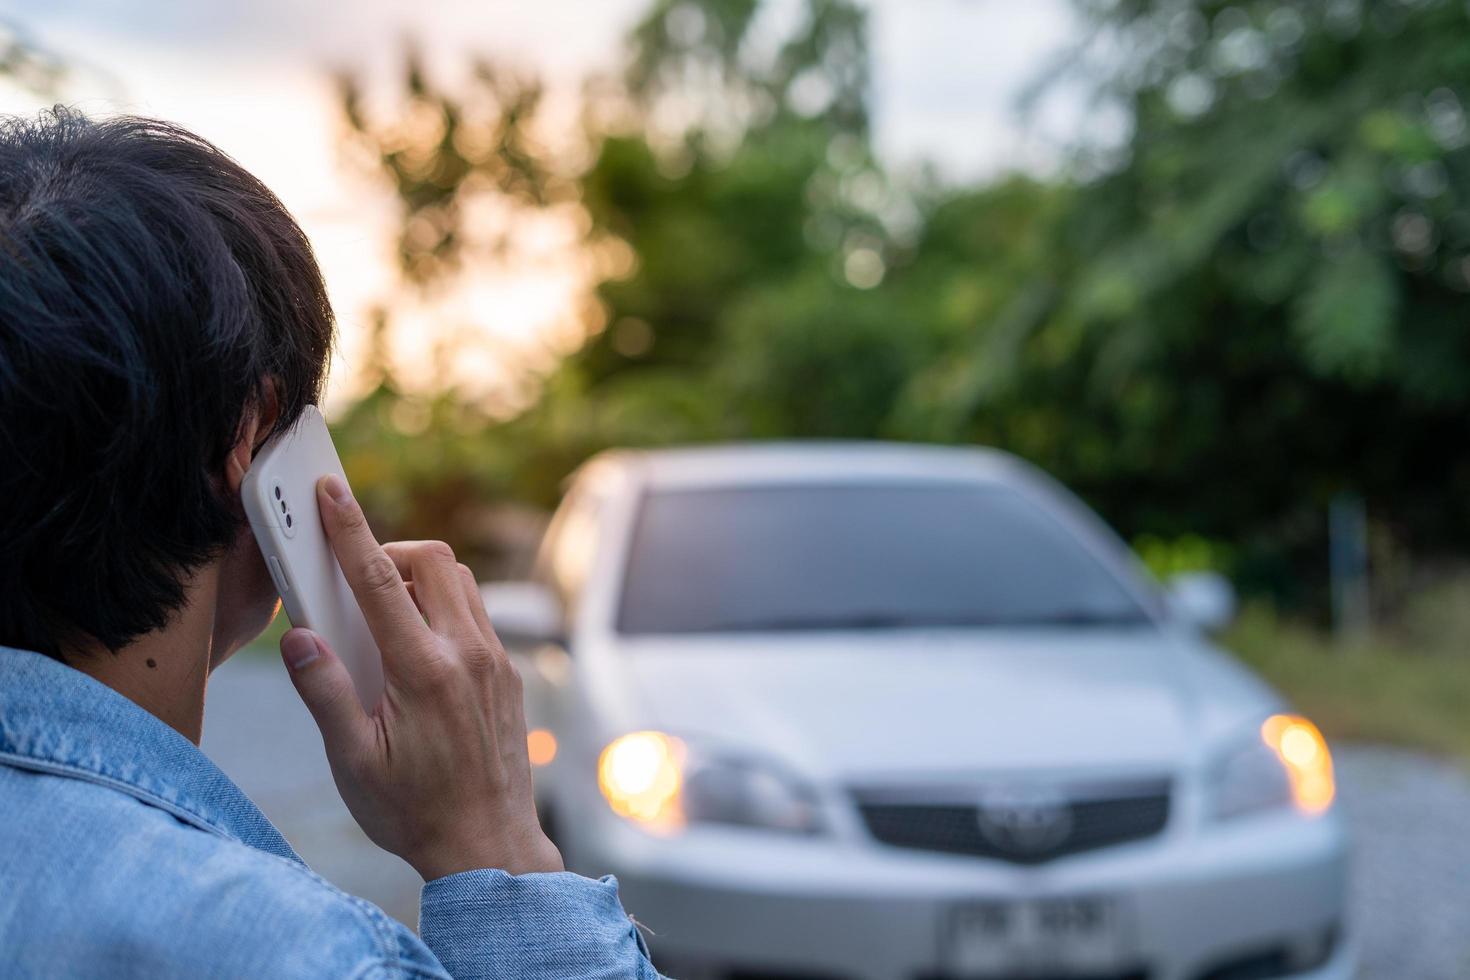 segurança de emergência. homem está discando um telefone celular para um número de emergência devido a uma avaria de carro na floresta. a manutenção do carro antes da viagem aumenta a segurança contra acidentes. foto